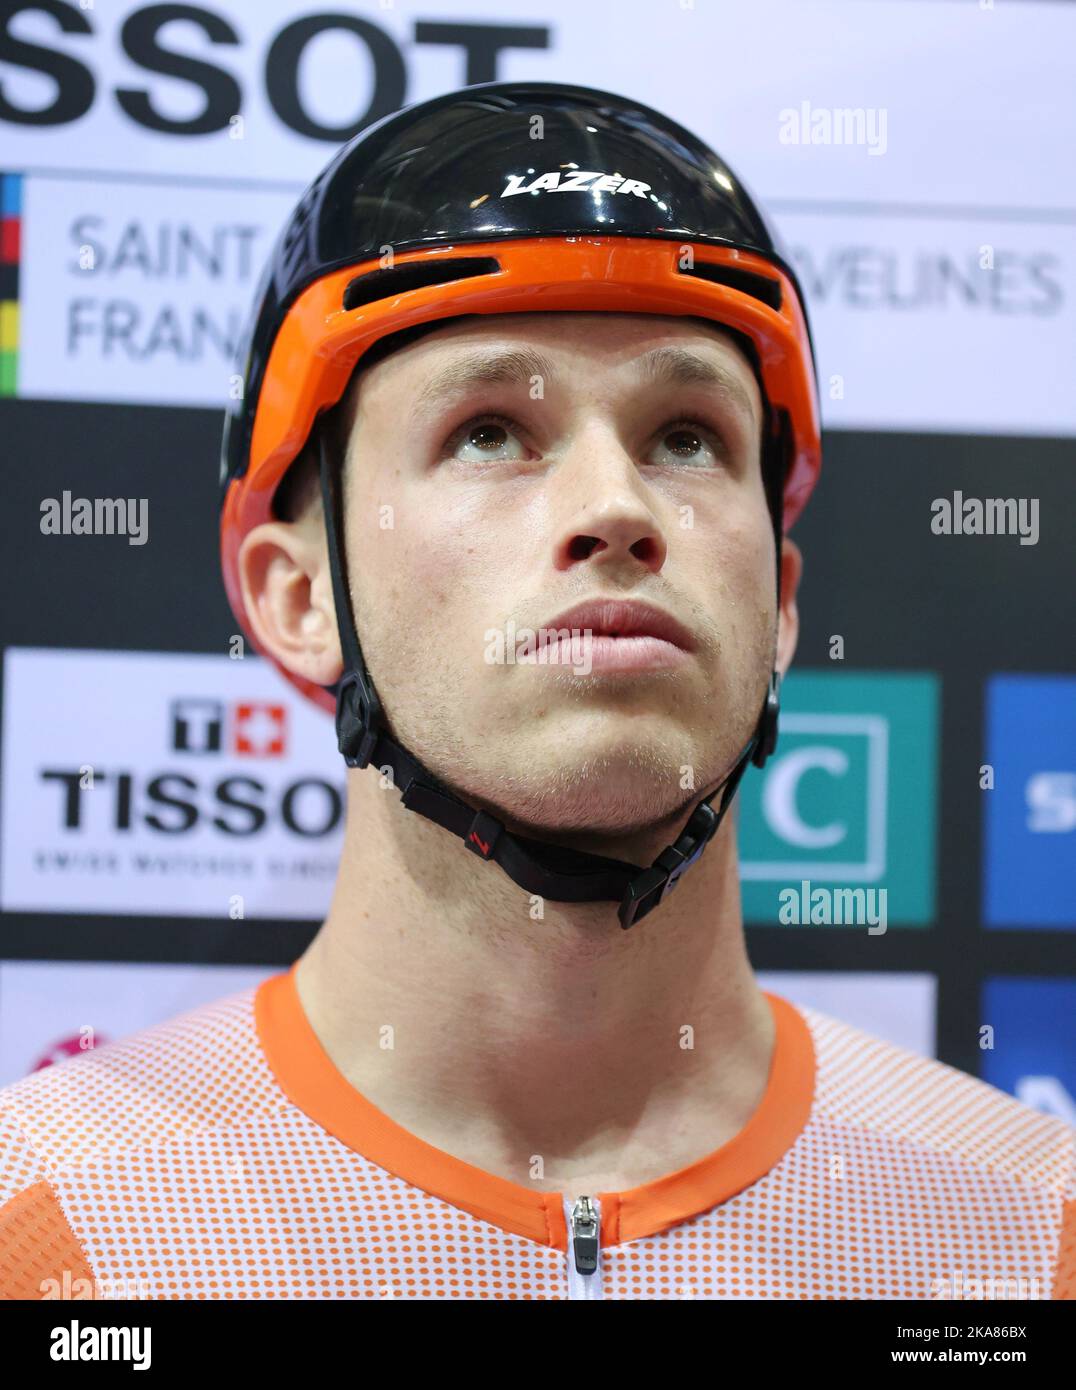 Harrie Lavreysen dai Paesi Bassi ai Campionati mondiali di ciclismo su pista UCI 2022 a Saint-Quentin-en-Yvelines (Francia). Foto Stock